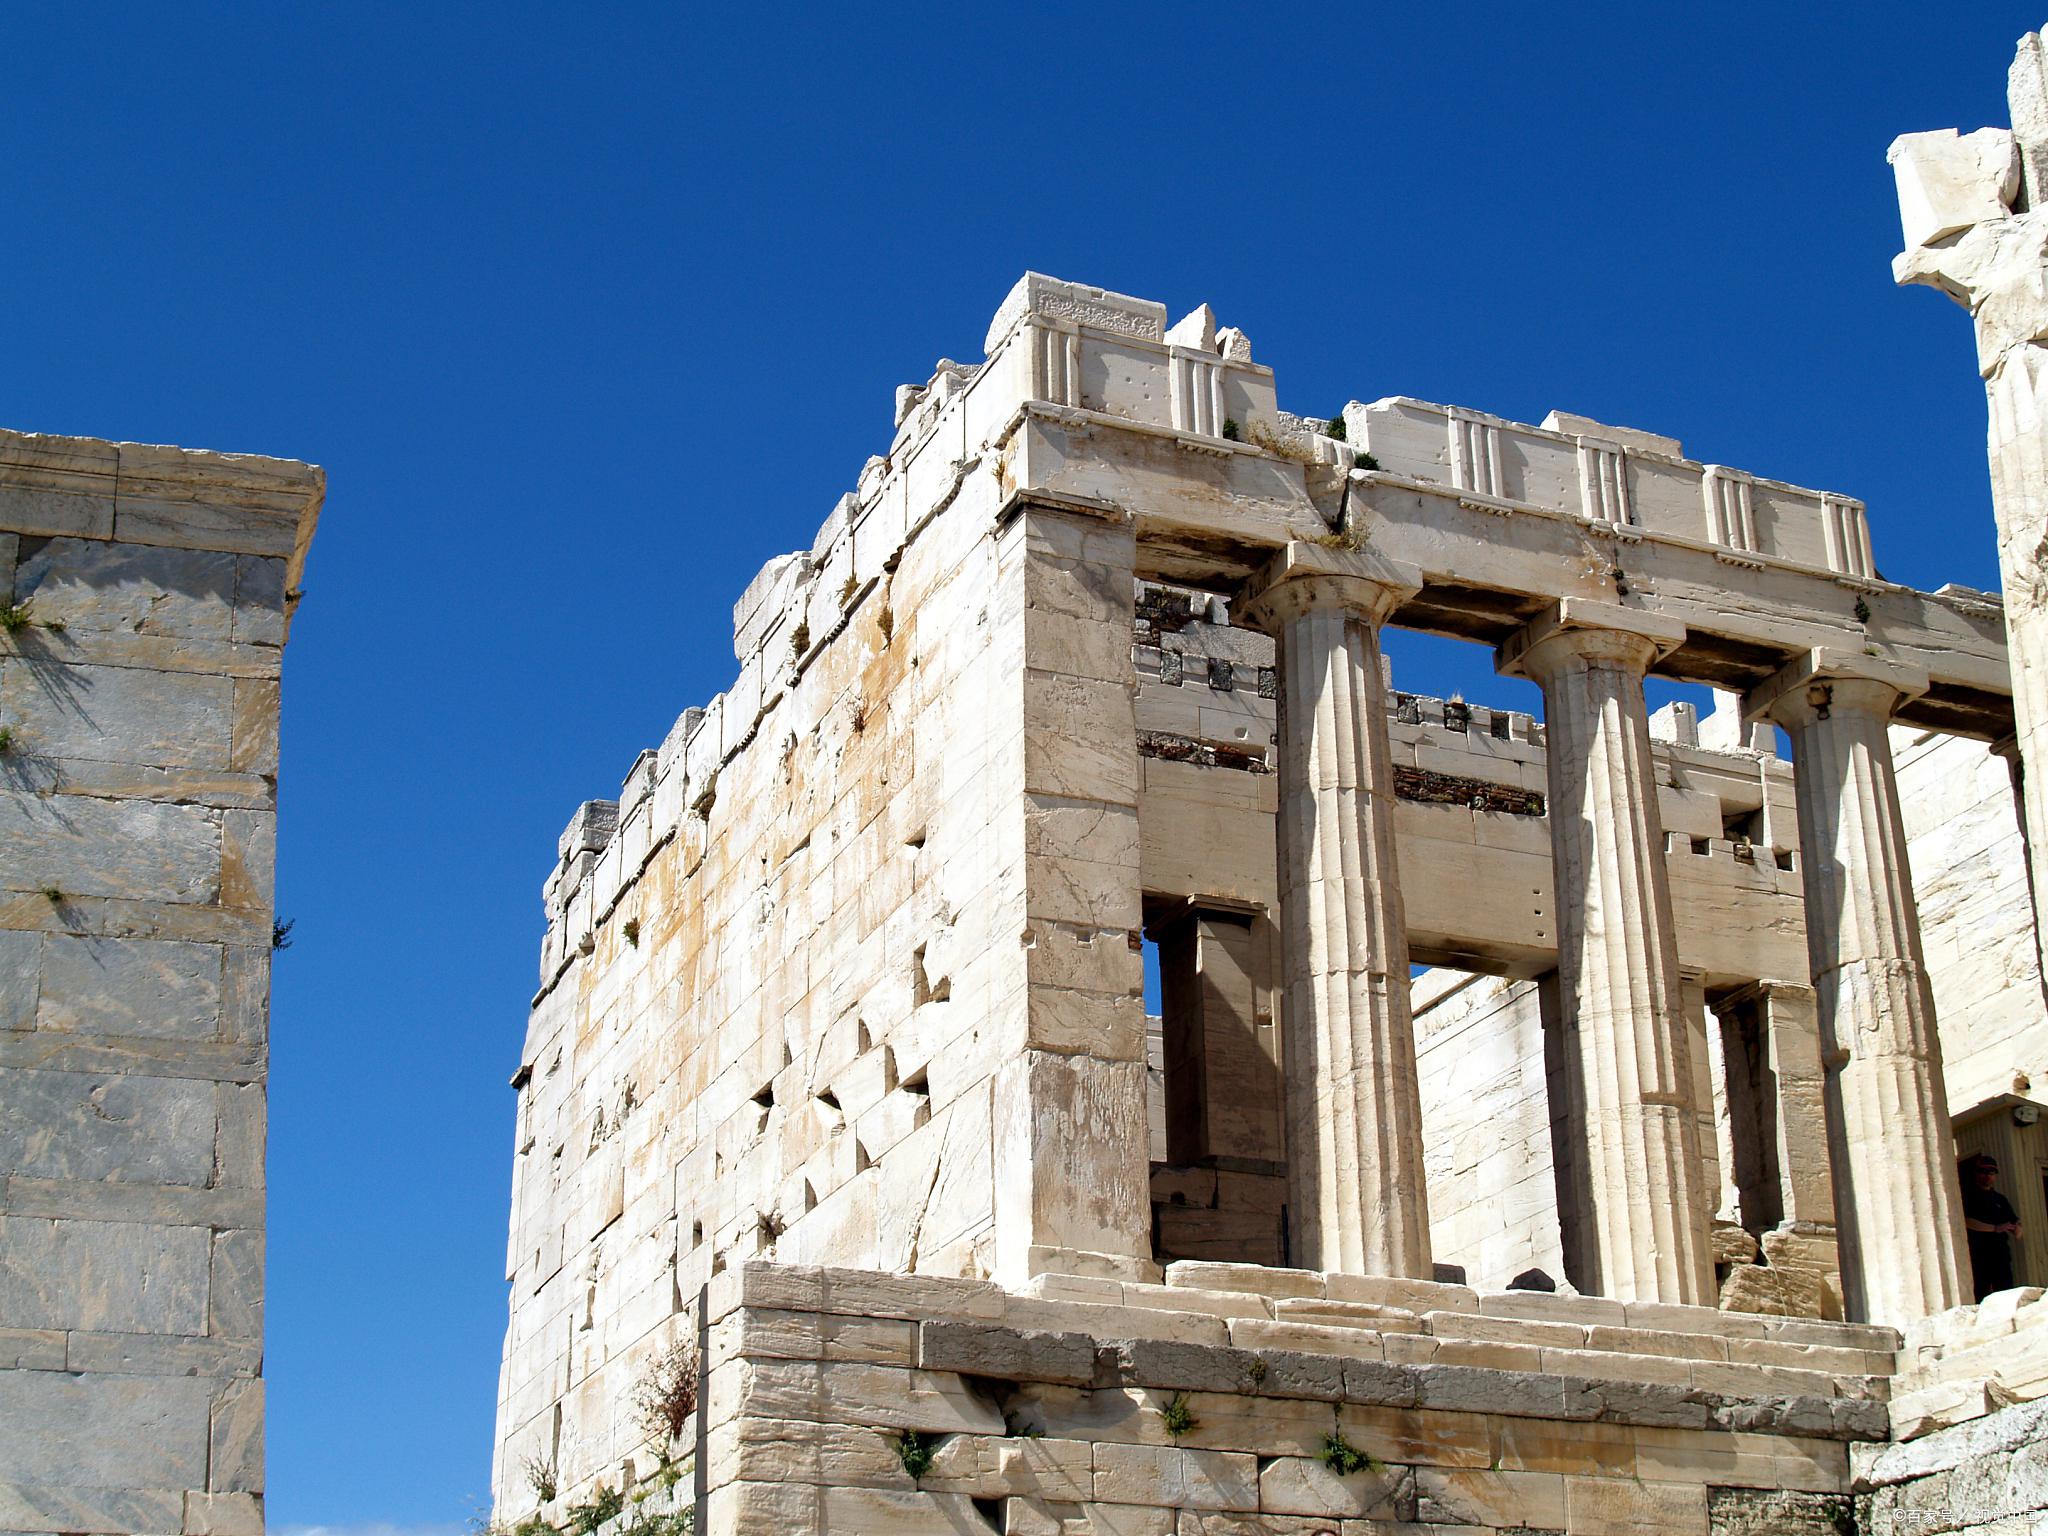 帕特农神庙:希腊文明的璀璨瑰宝 作为希腊雅典的标志性建筑,帕特农